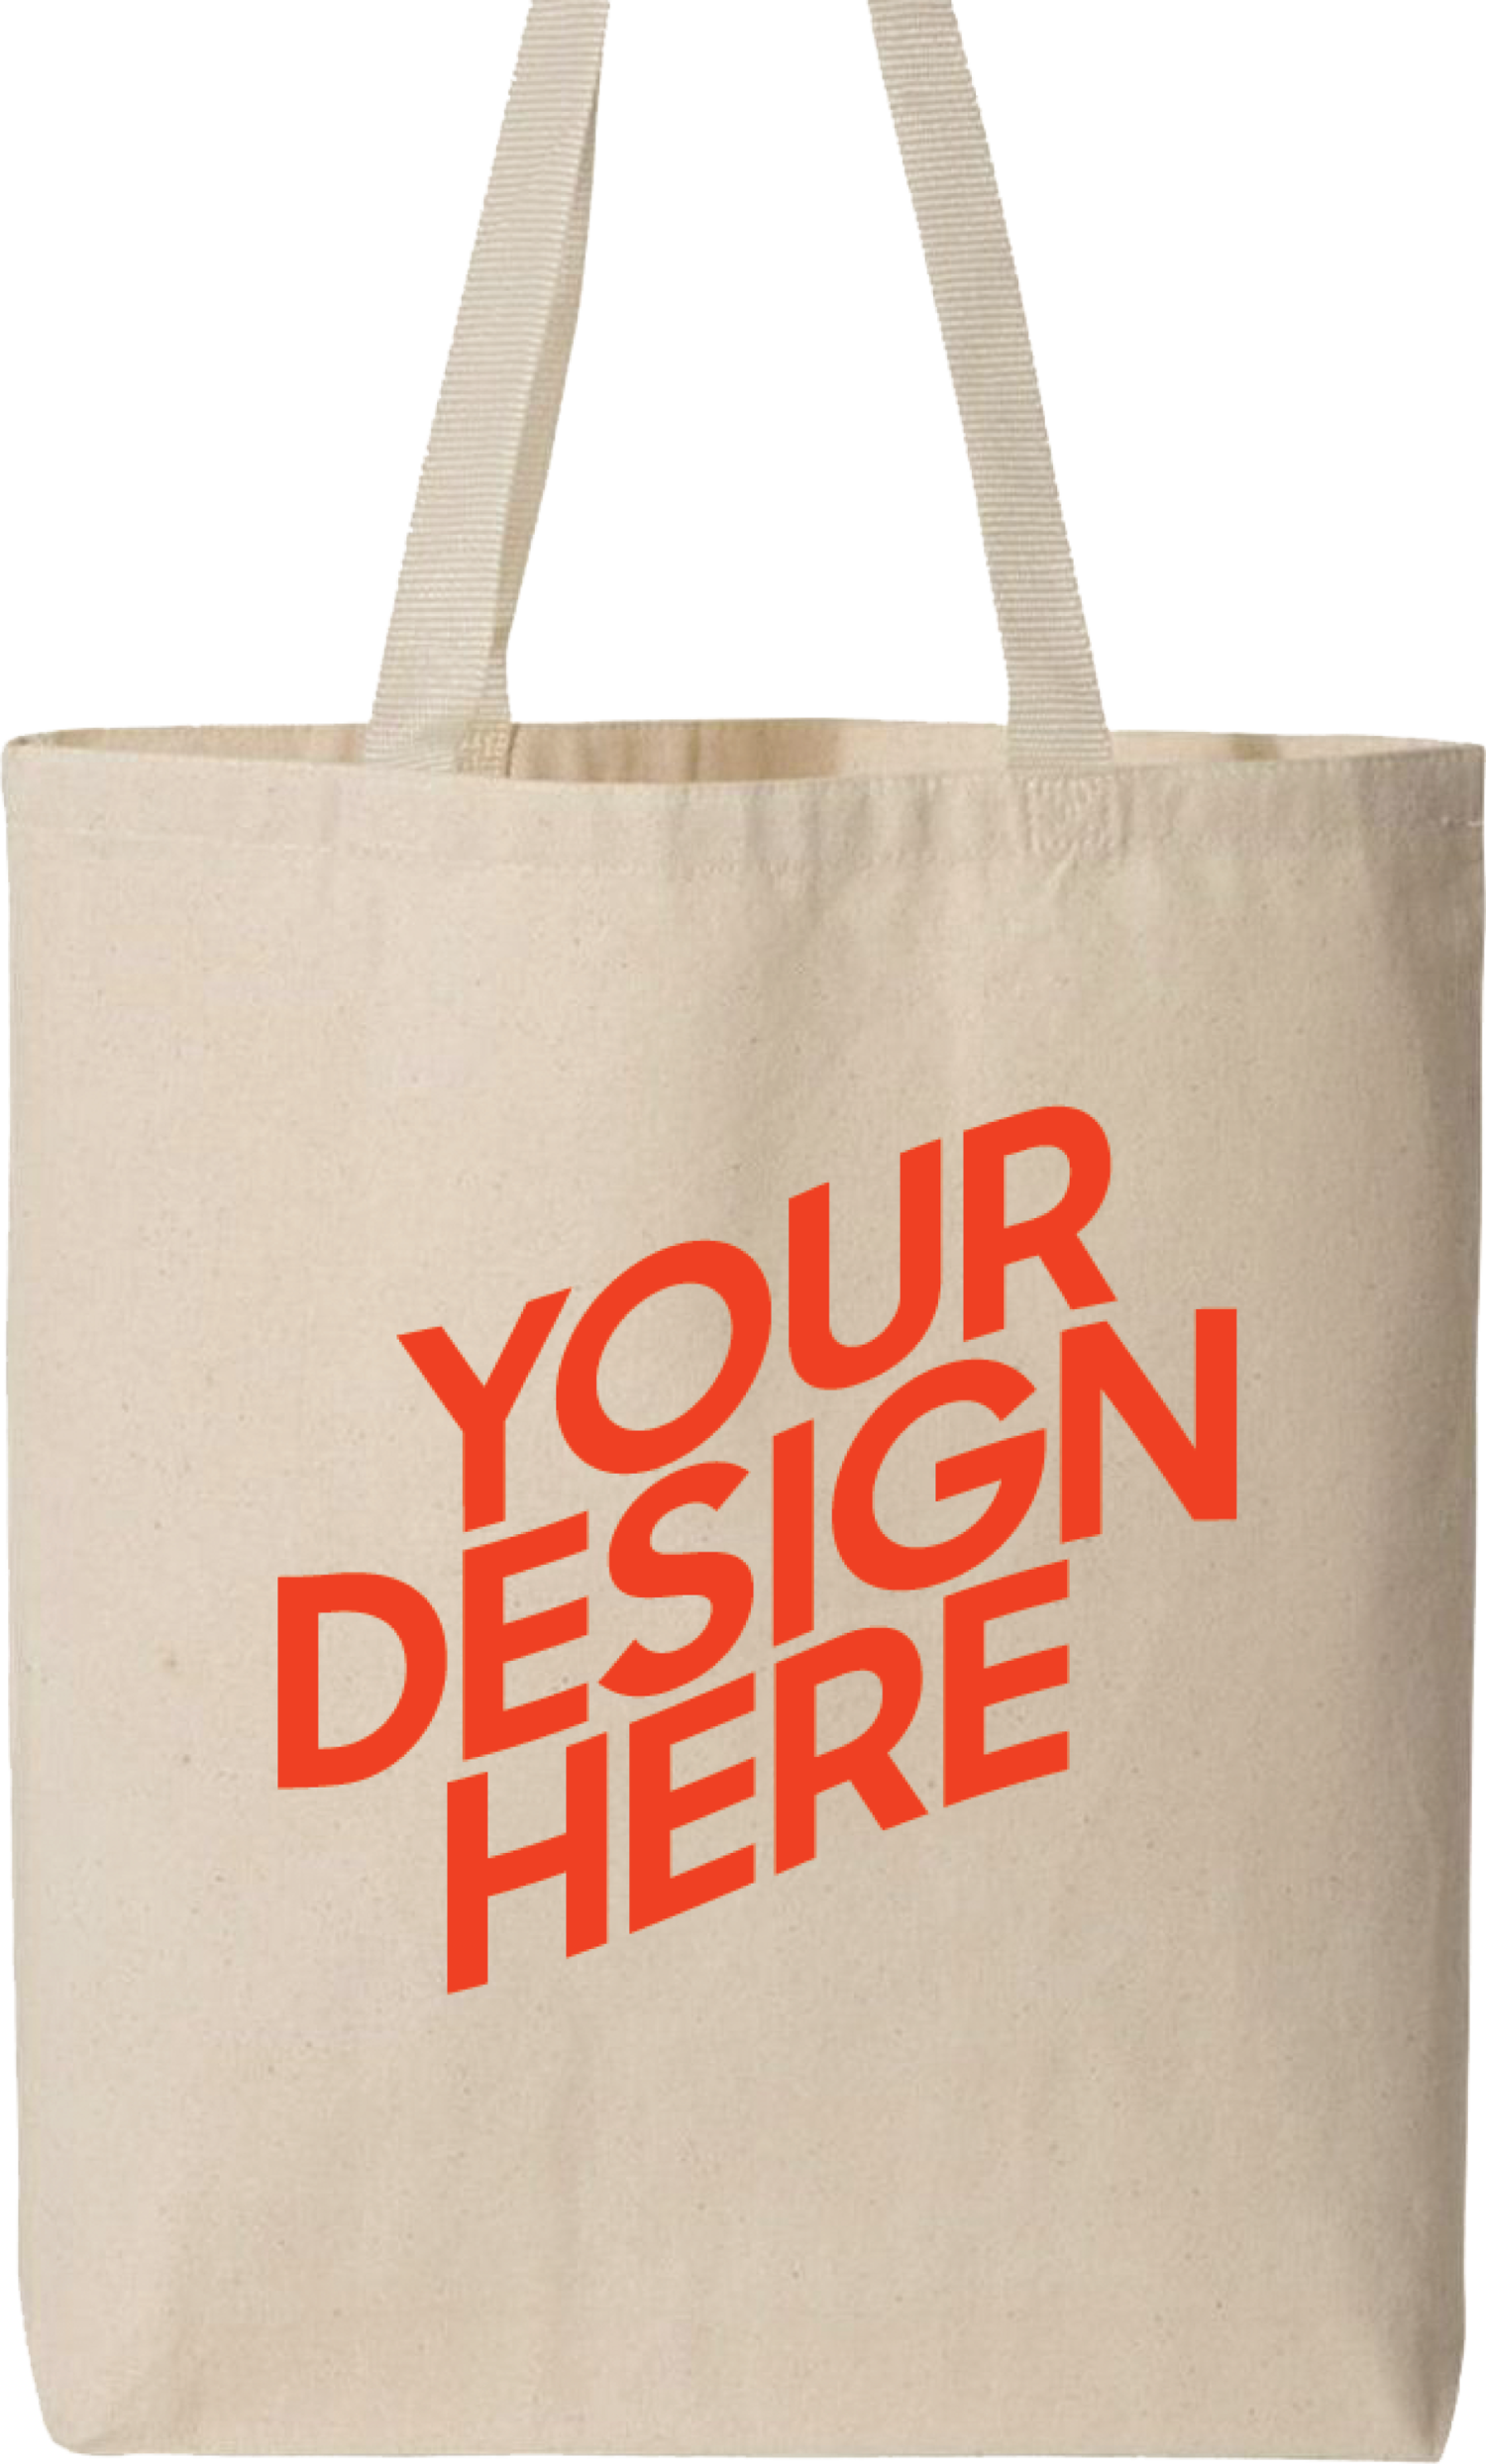 design custom tote bag